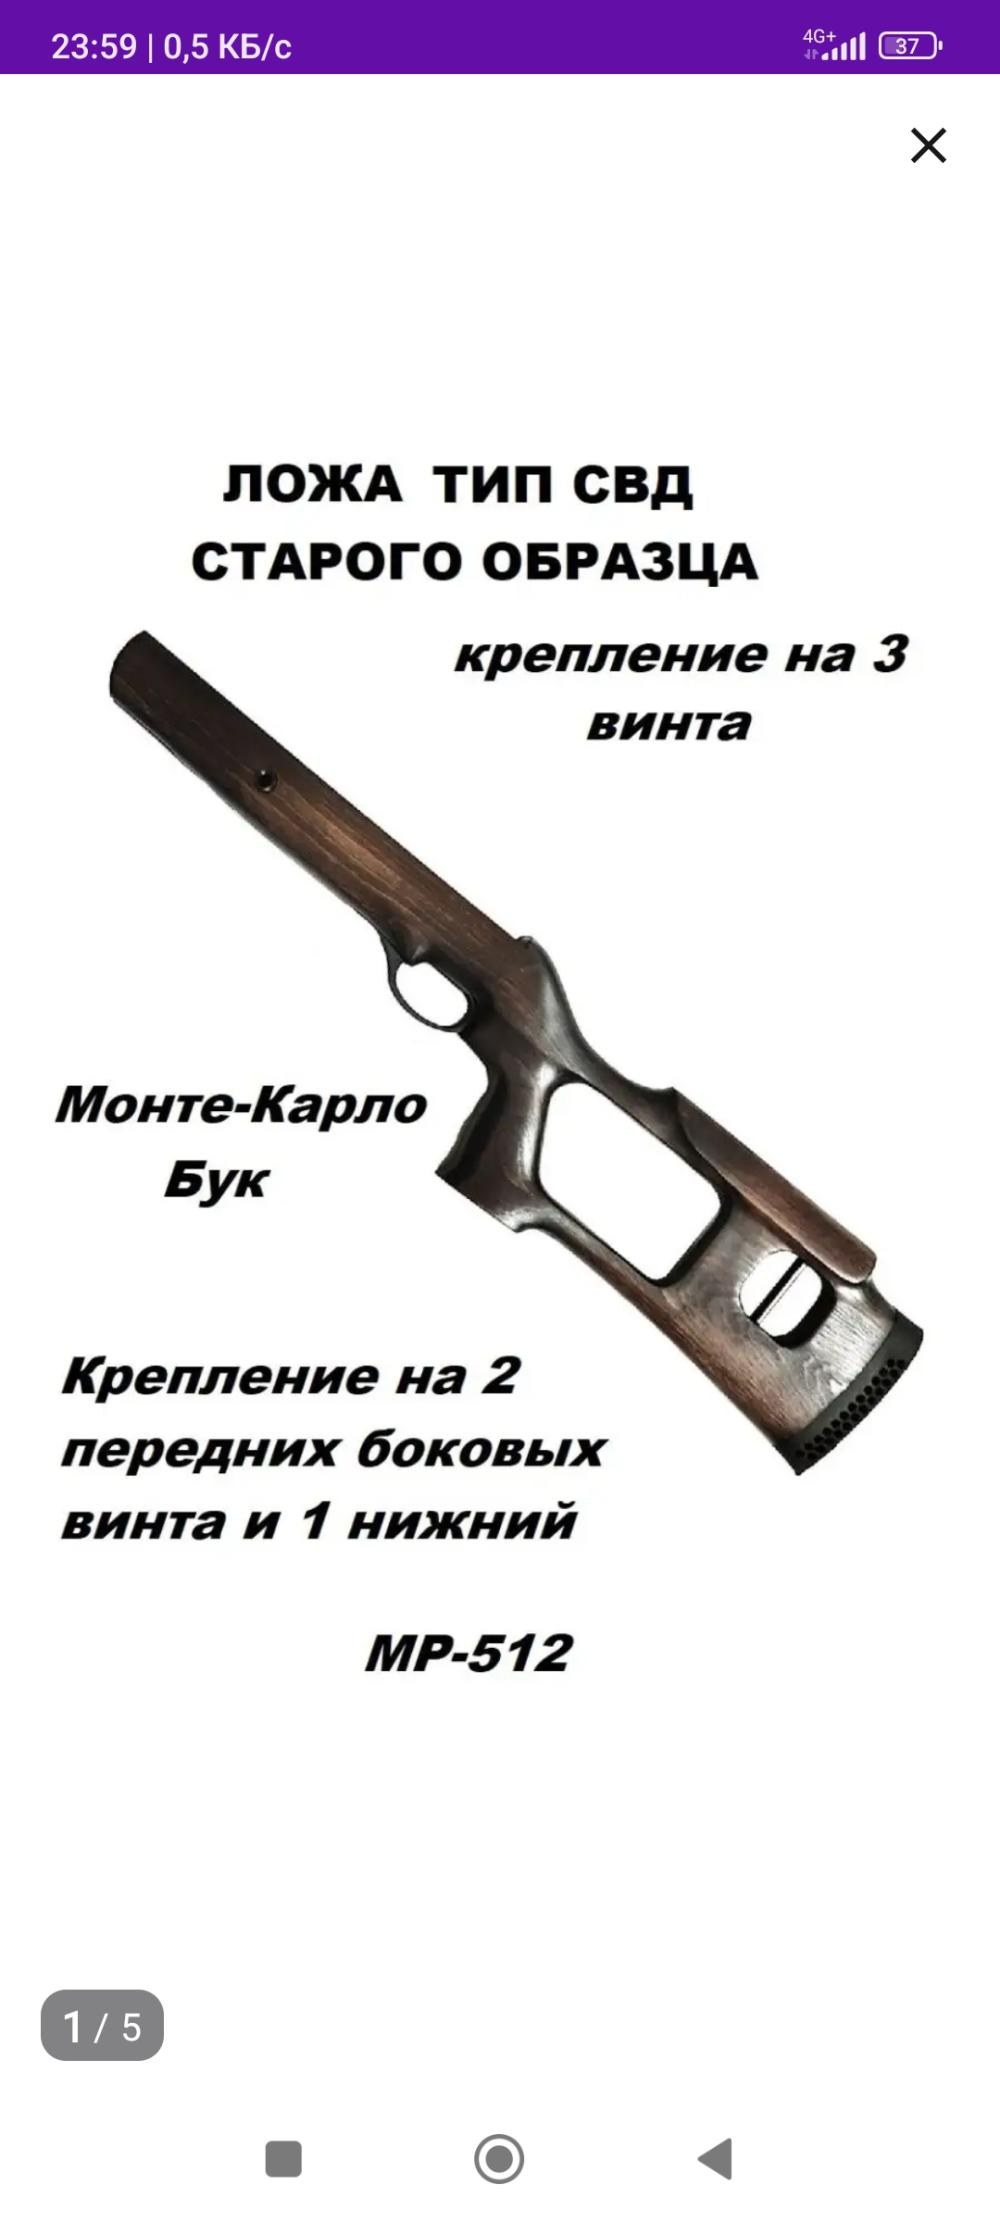 Ложа типа свд на винтовку мр 512